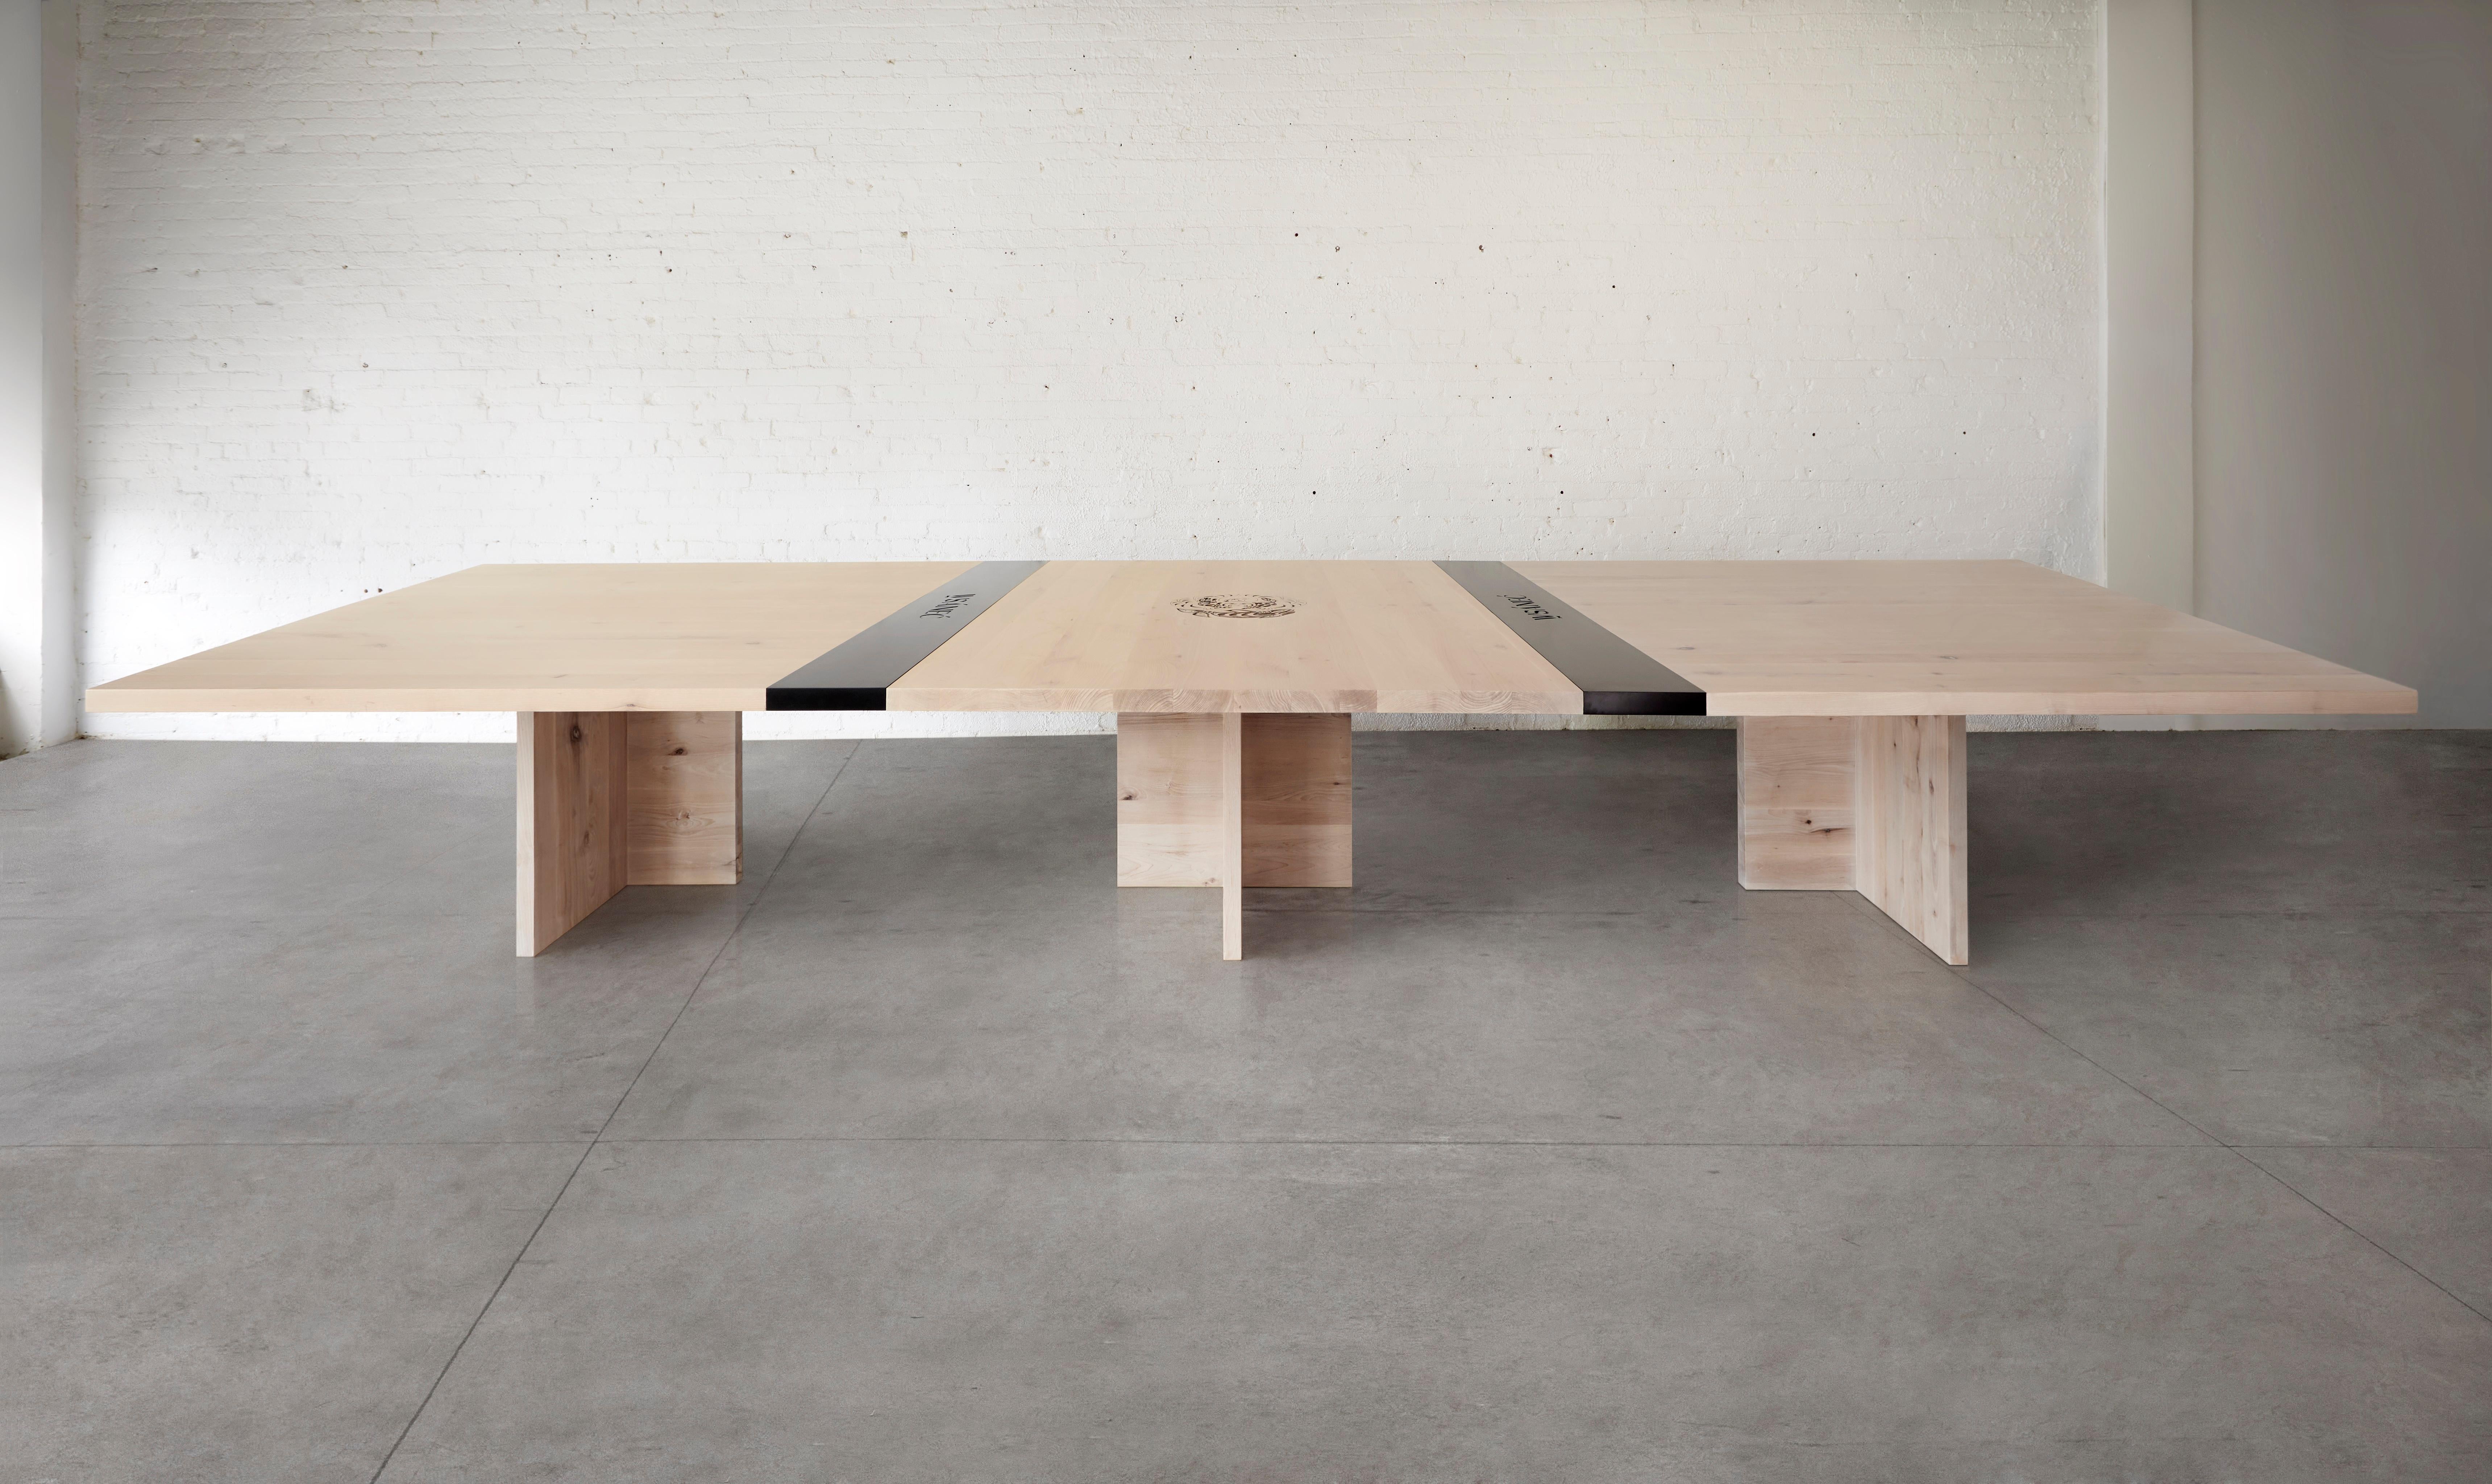 Dieser aus massiver Vancouver Island Alder gefertigte Tisch strahlt Stärke und Luxus aus und bildet die Grundlage für produktive Meetings und fruchtbare Diskussionen.

Anpassbare Anpassungen für AV-Geräte sorgen für eine nahtlose Integration der